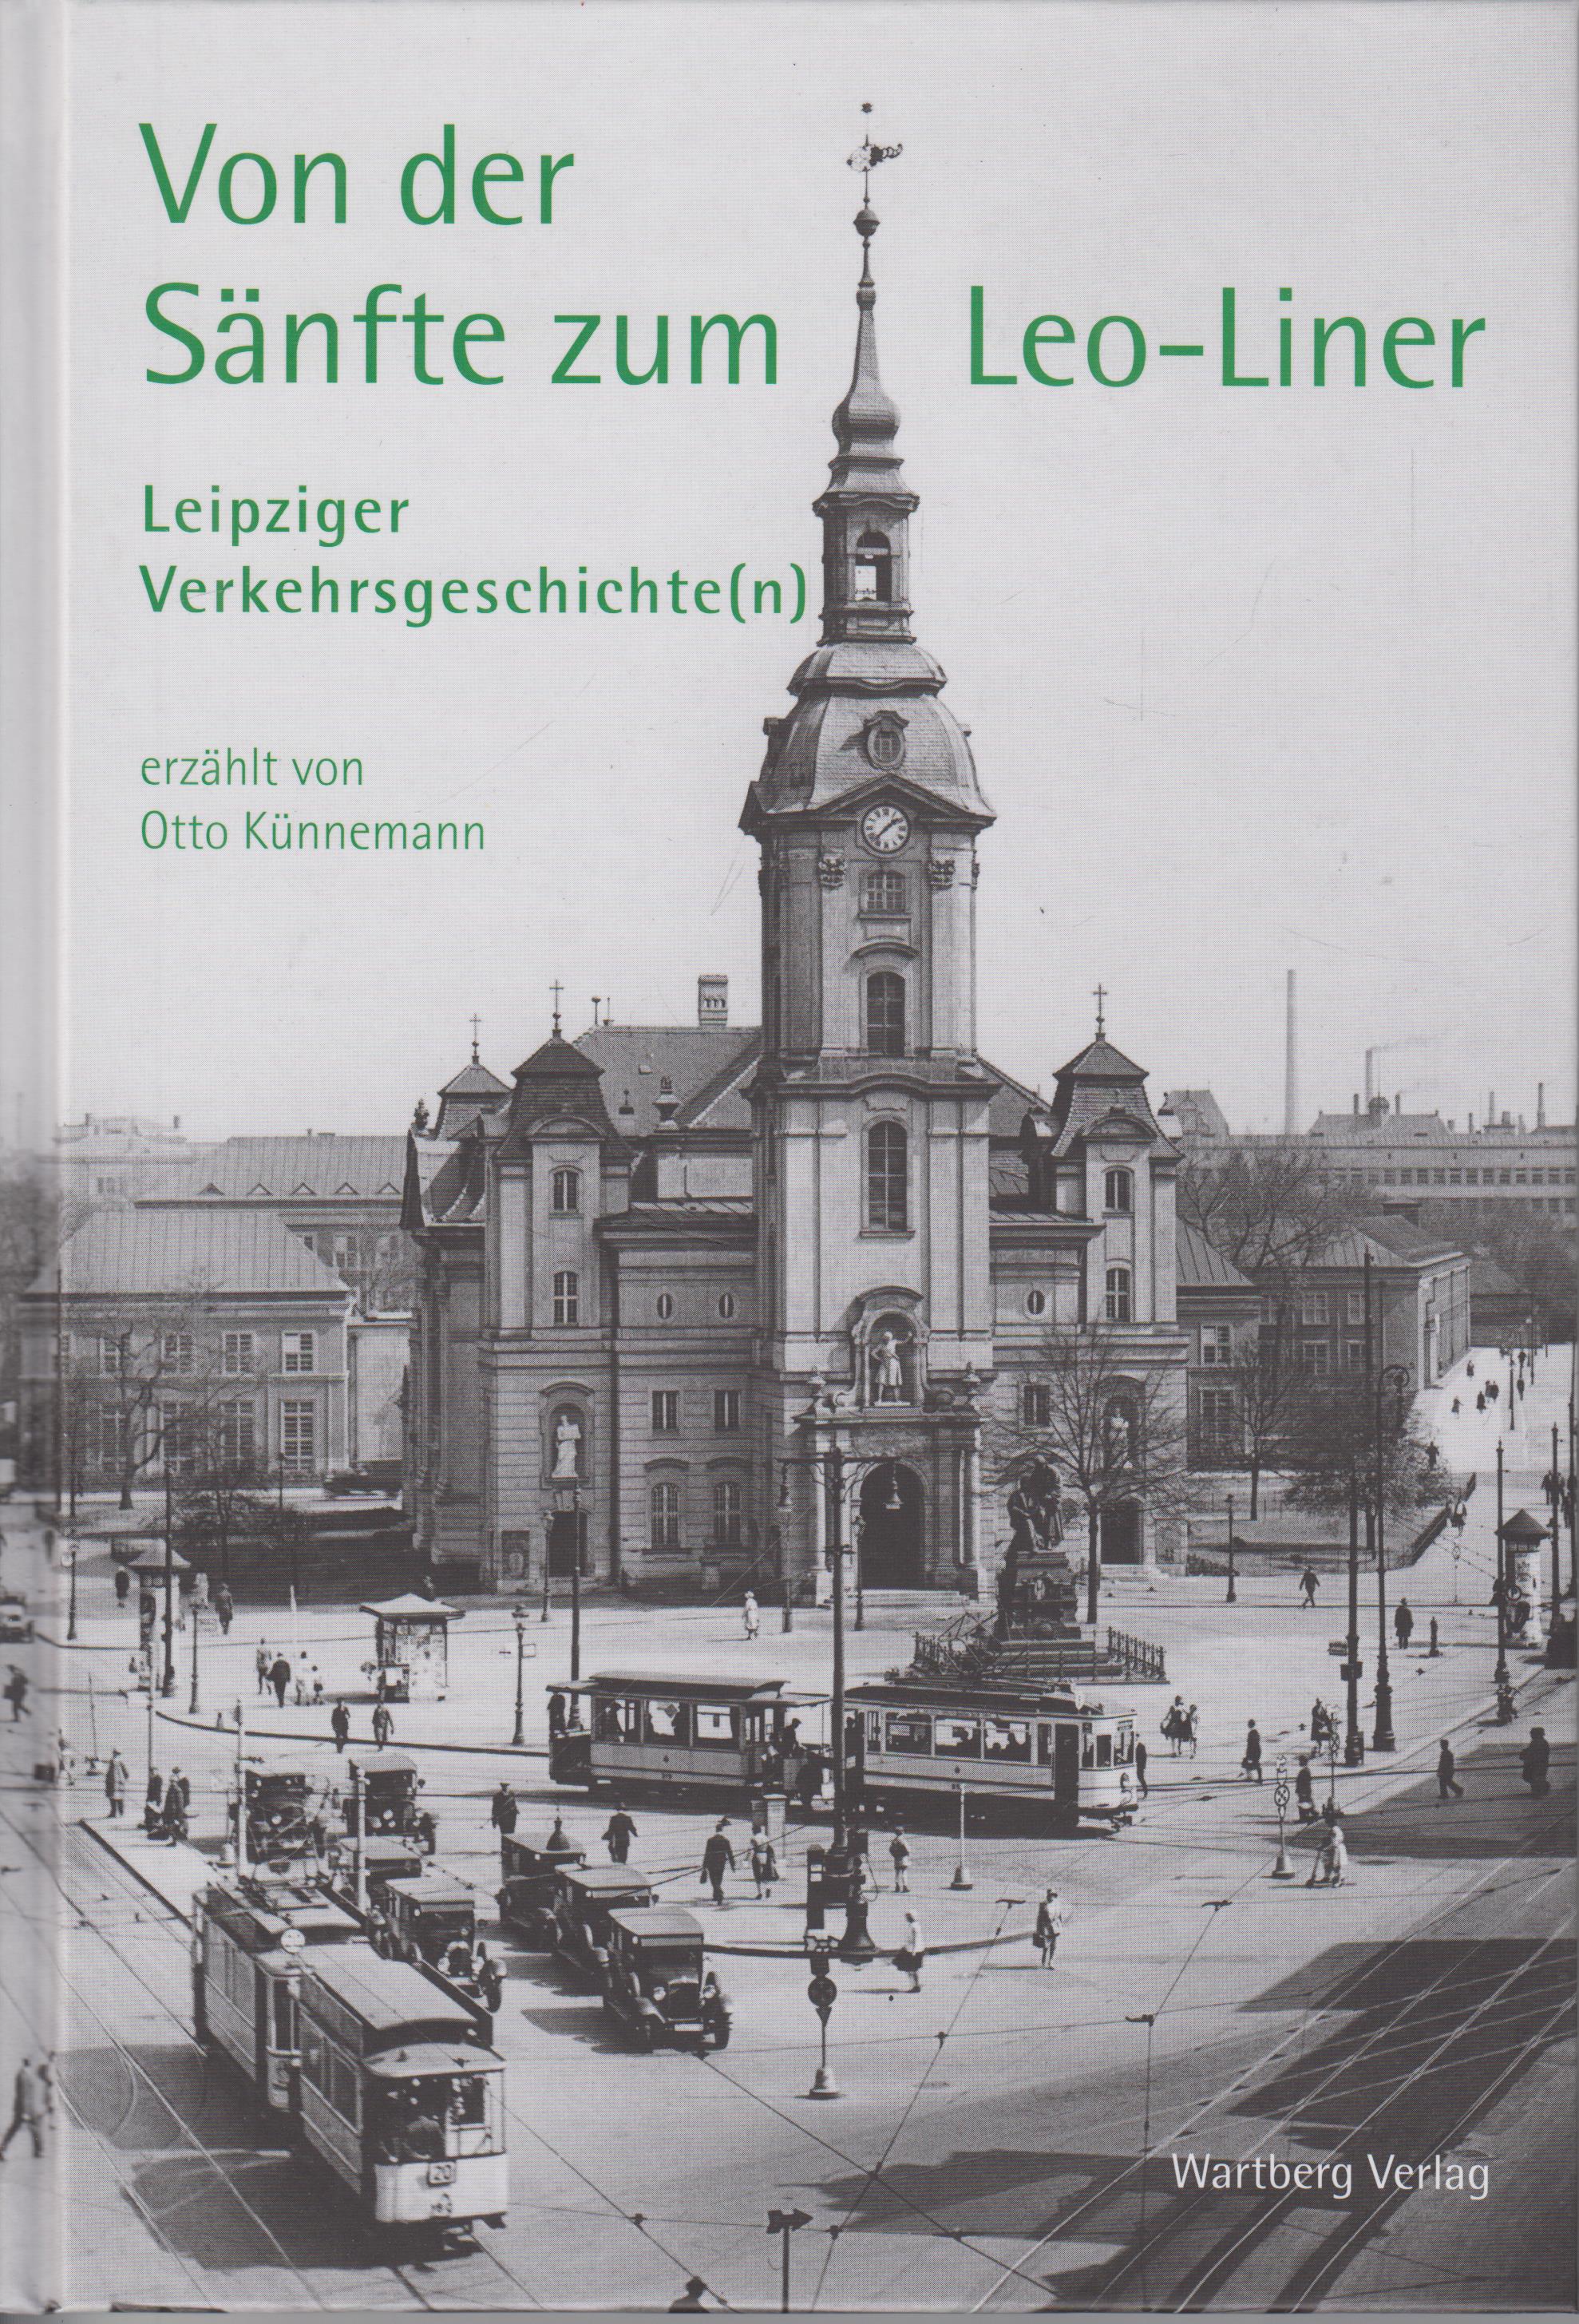 Von der Sänfte zum Leo - Liner Leipziger Verkehrsgeschichte(n) - Künnemann, Otto